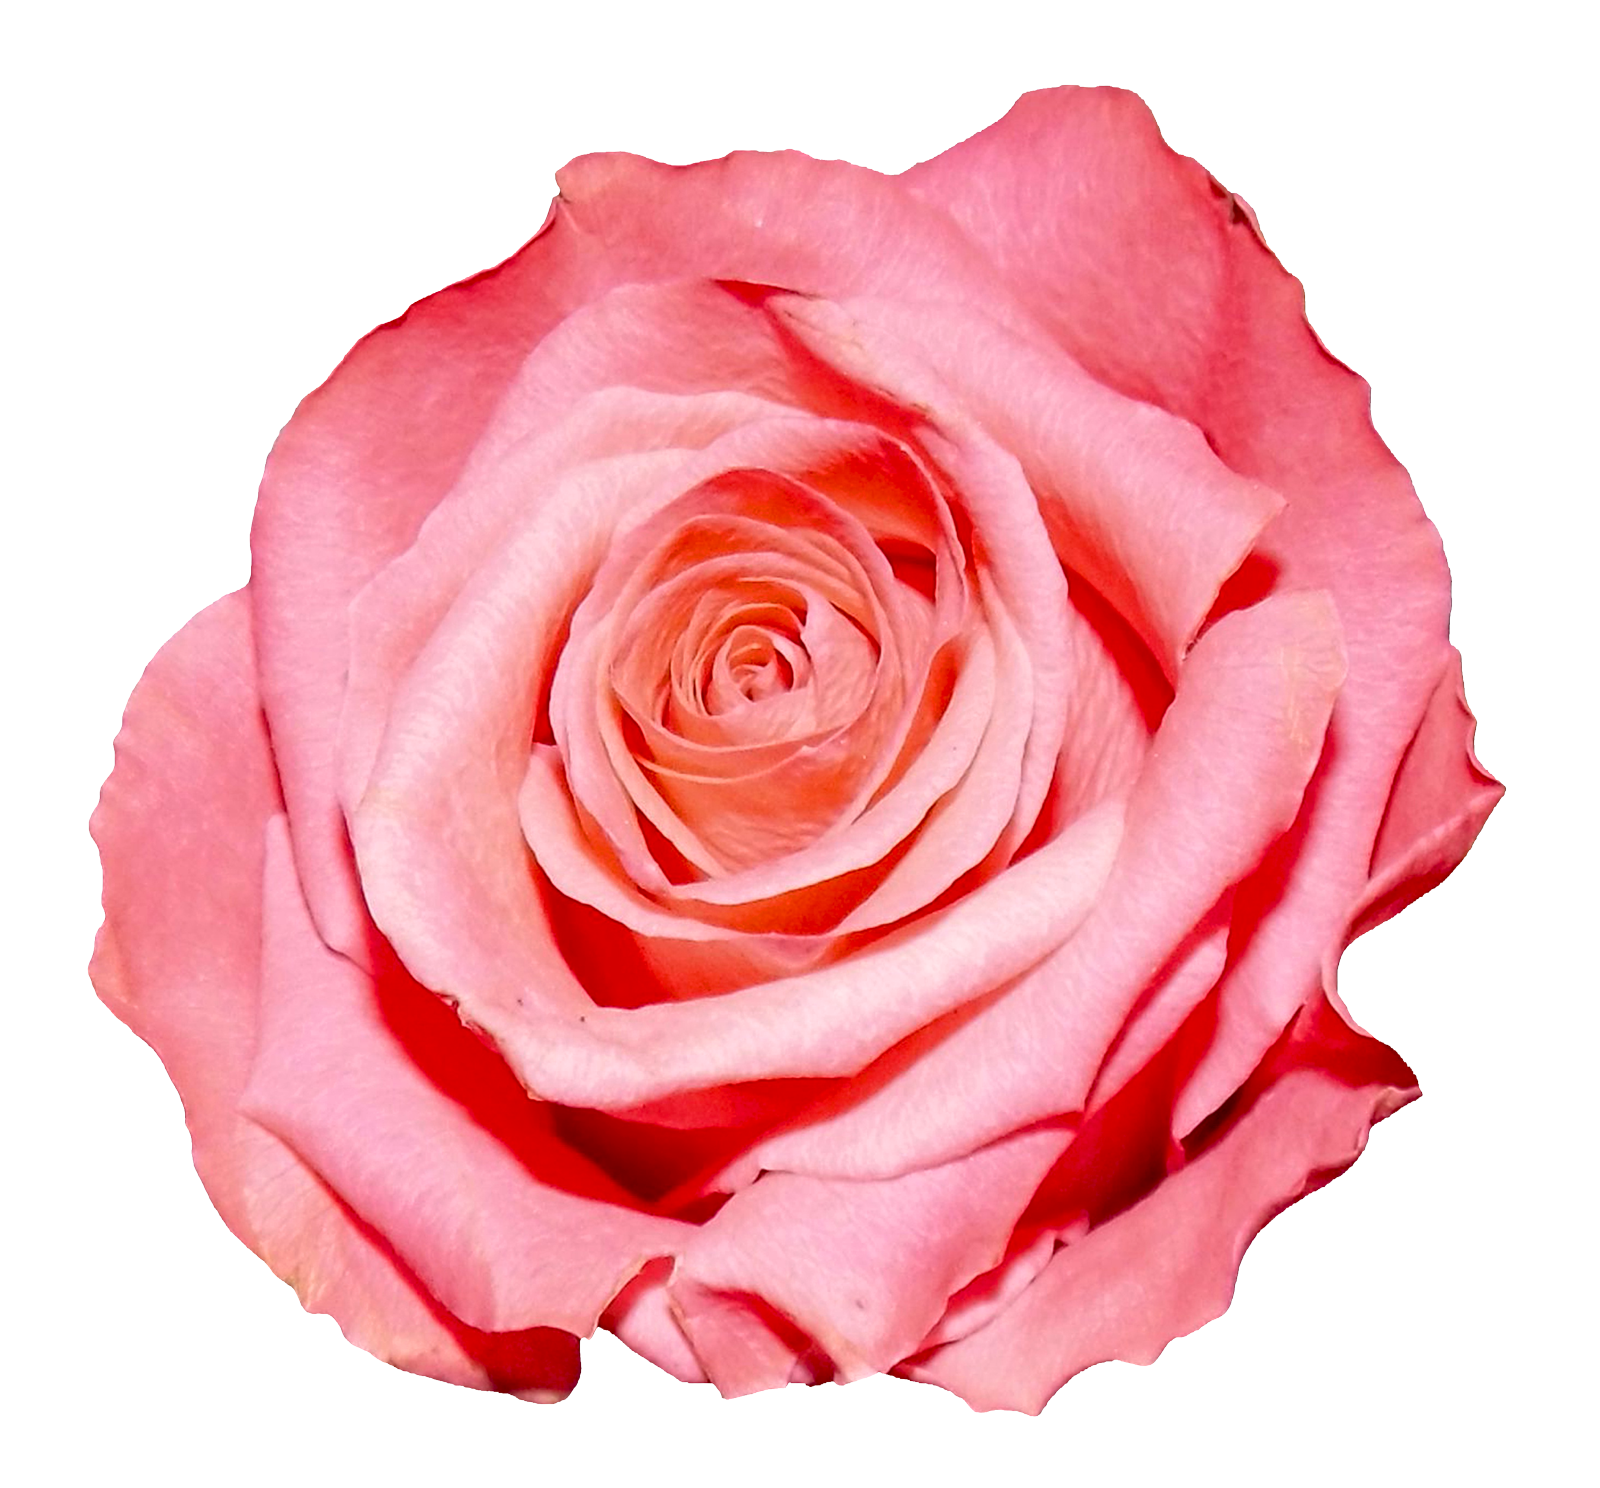 Rose PNG Image.